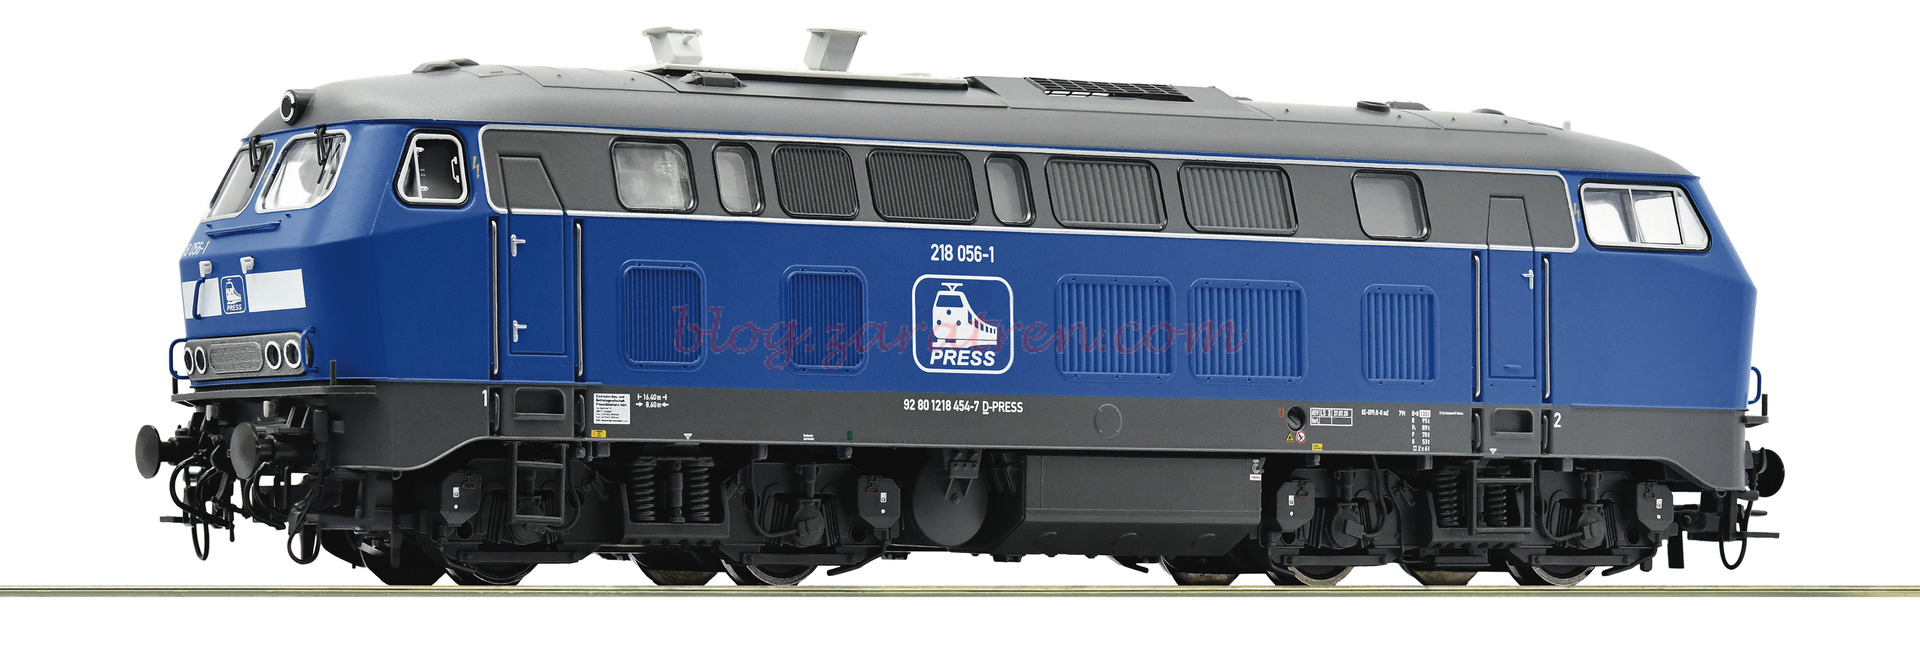 Roco – Locomotora Diesel 218 056-1, PRESS, D. Sonido, Epoca VI, Escala H0, Ref: 7310025